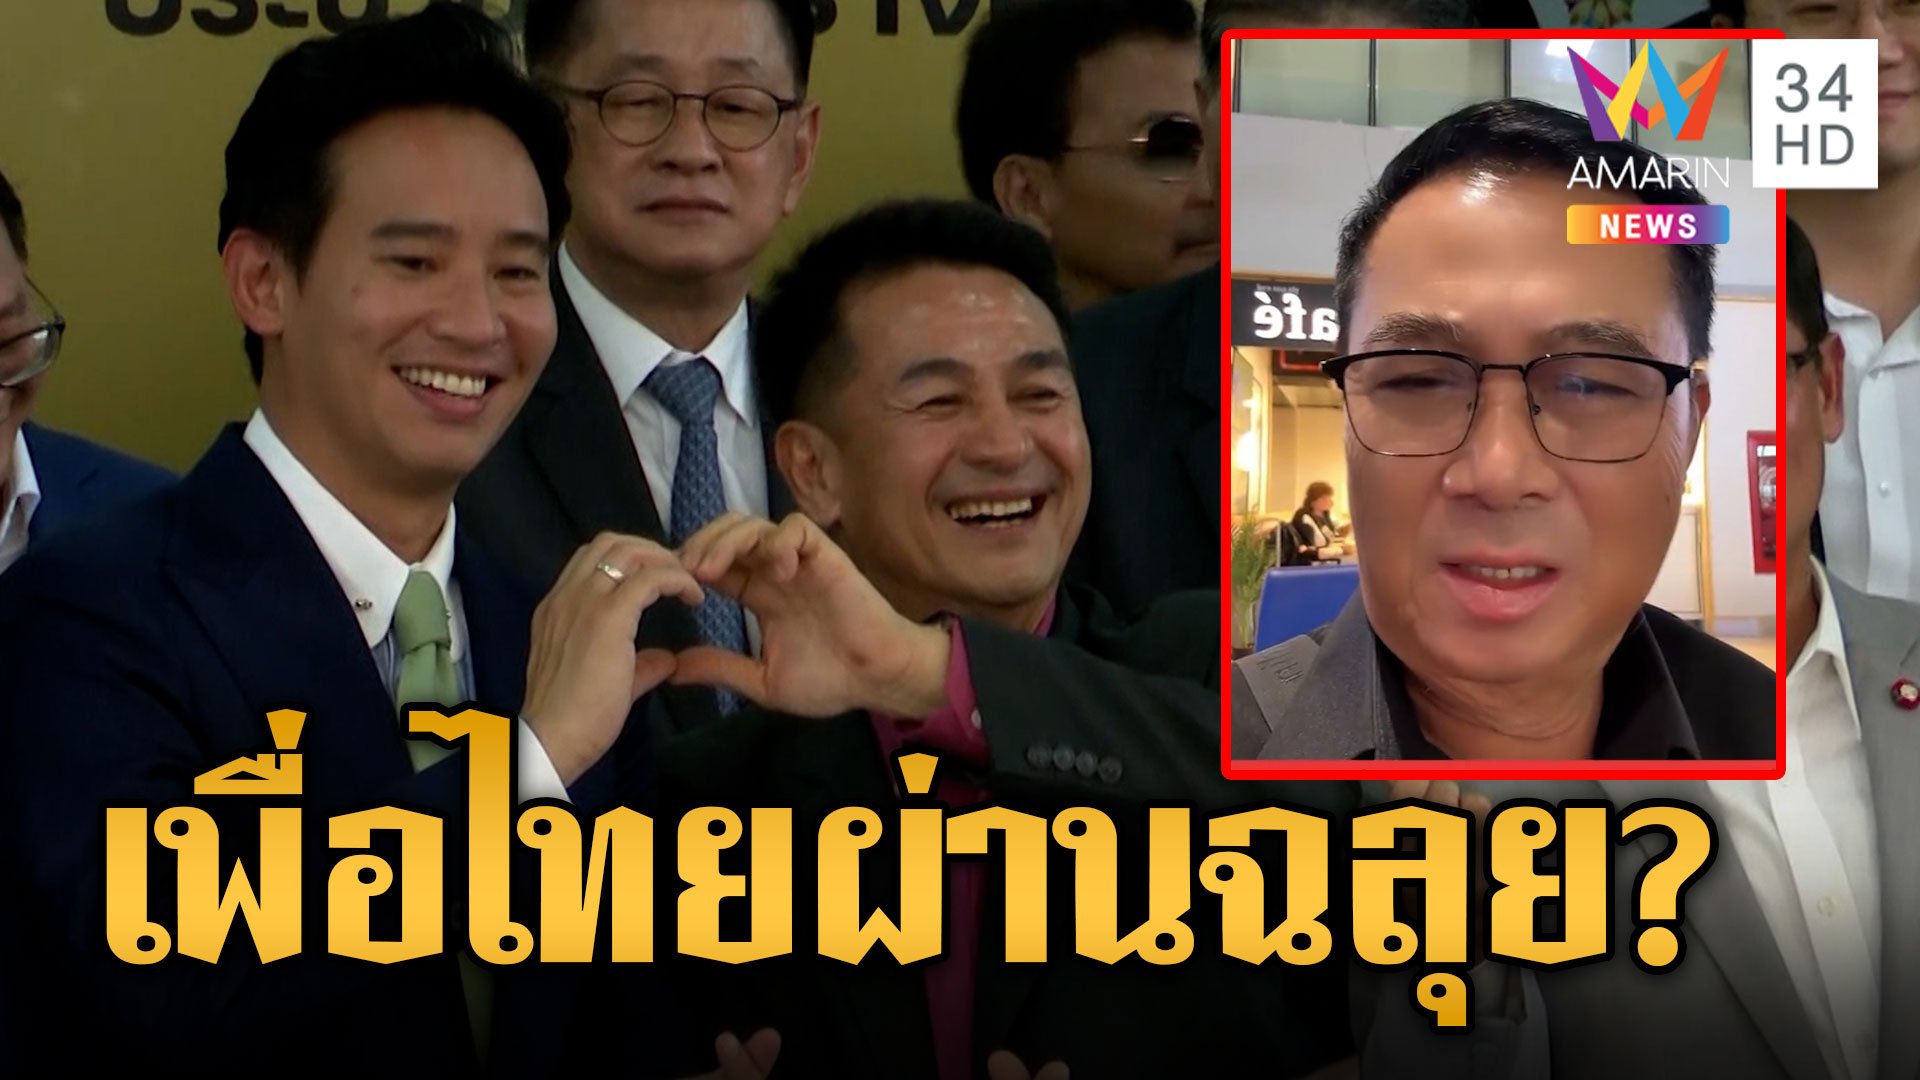 "อดิศร" แต่งกลอนซัดก้าวไกลไร้เพื่อนตั้งรัฐบาล มั่นใจเพื่อไทยชู "เศรษฐา" ผ่านฉลุย | ข่าวอรุณอมรินทร์ | 15 ส.ค. 66 | AMARIN TVHD34